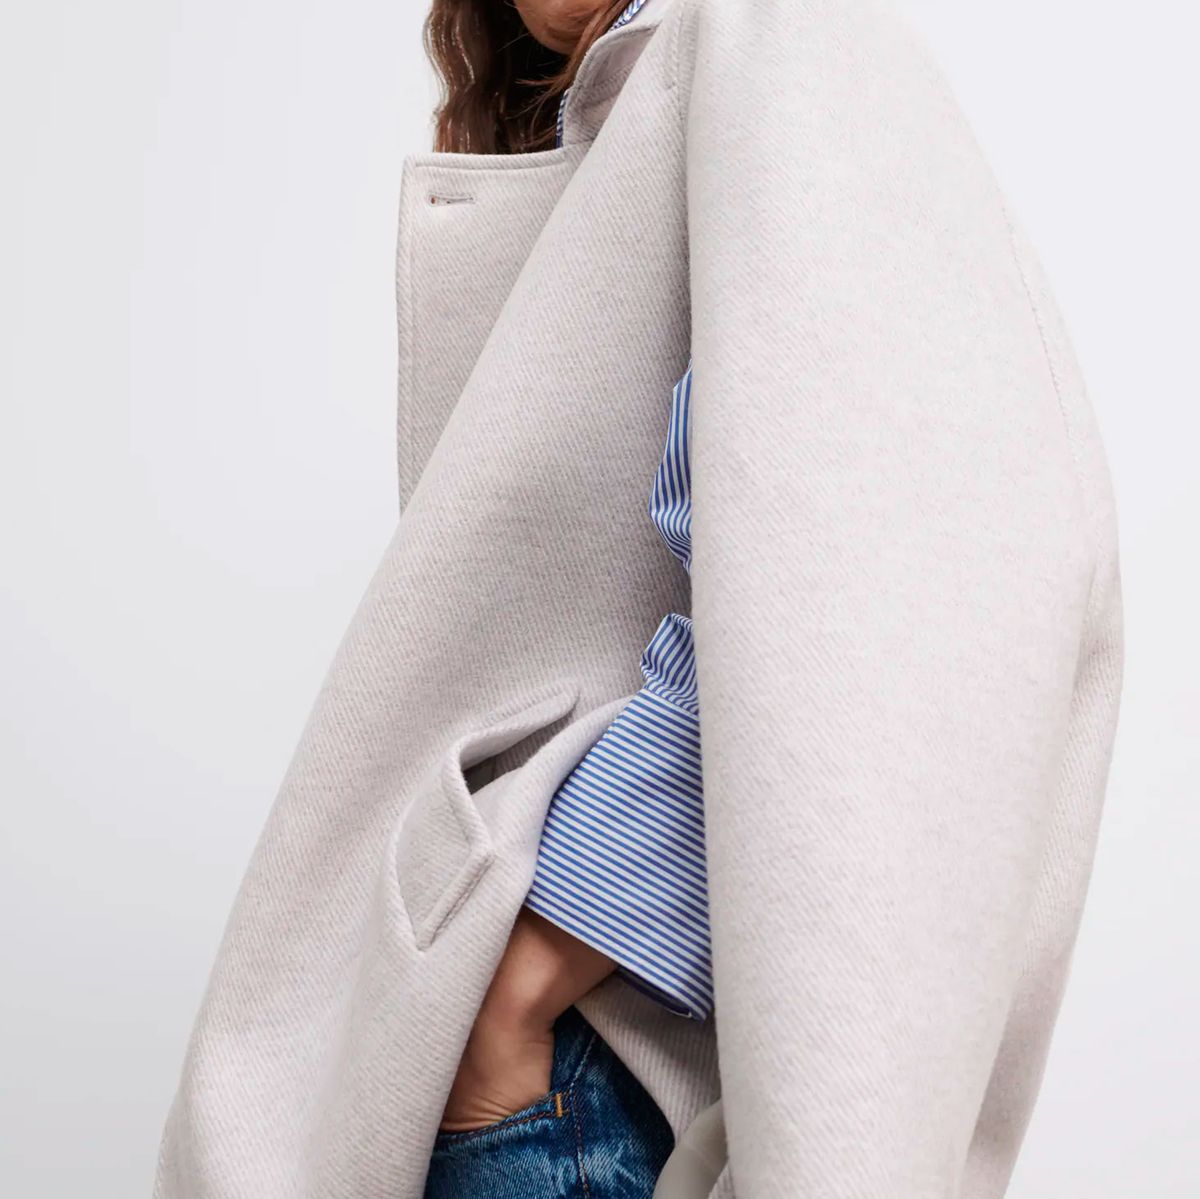 celestial Empírico delincuencia El abrigo capa de Zara más elegante de tendencia invierno de 2021